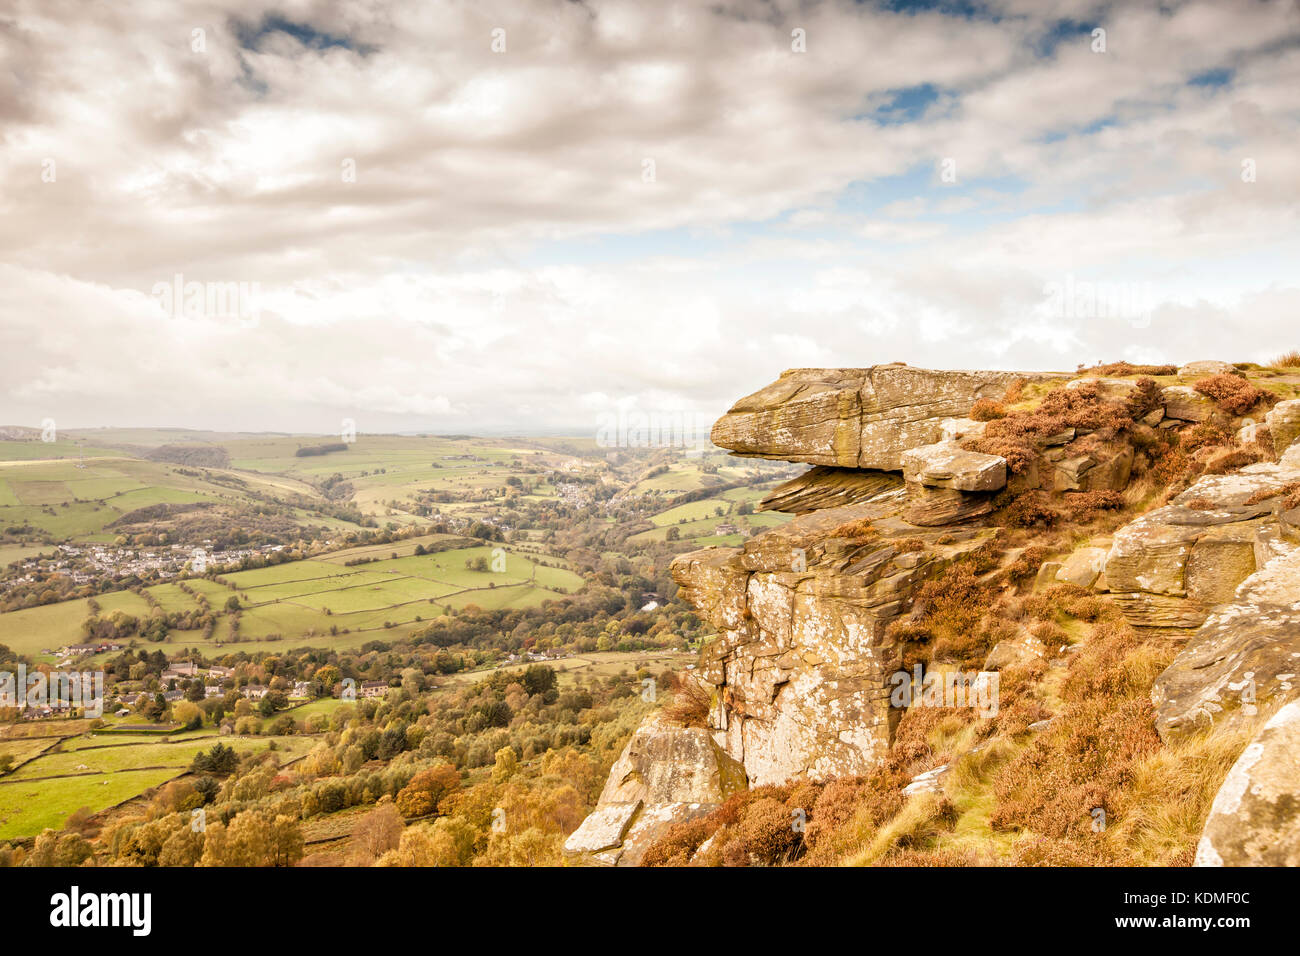 Vue panoramique depuis le bord curbar,parc national de Peak District, Derbyshire, Angleterre Banque D'Images